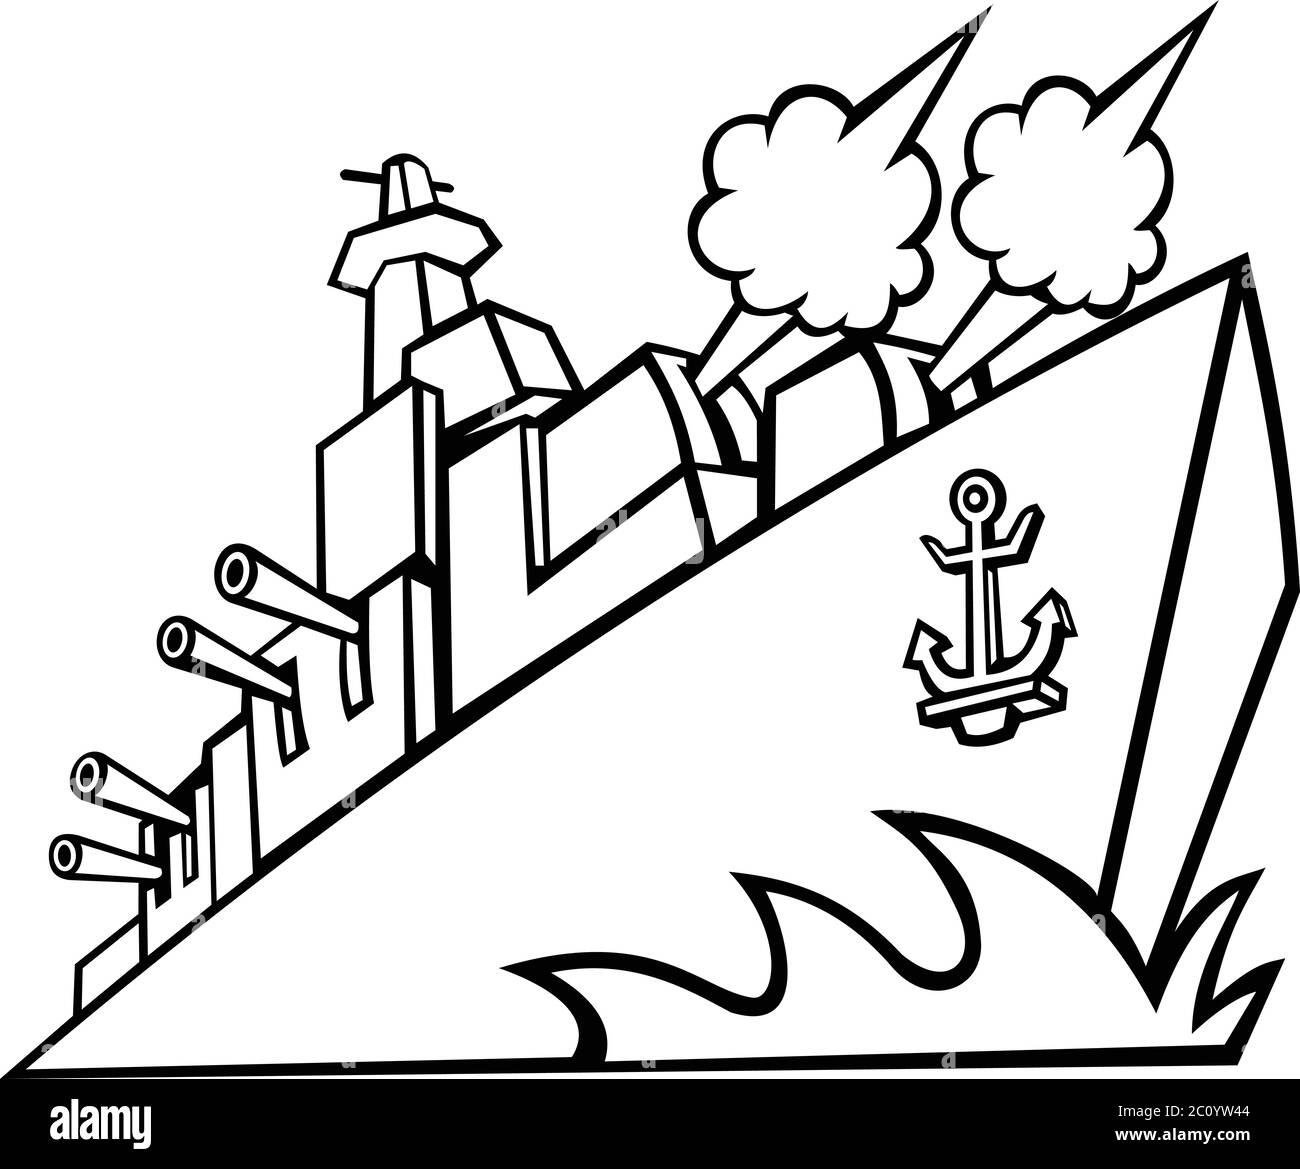 Icona Mascot illustrazione di un cacciatorpediniere, nave da guerra o corazzata americana con cannoni sparanti visto da un angolo basso su sfondo isolato in retro b Illustrazione Vettoriale